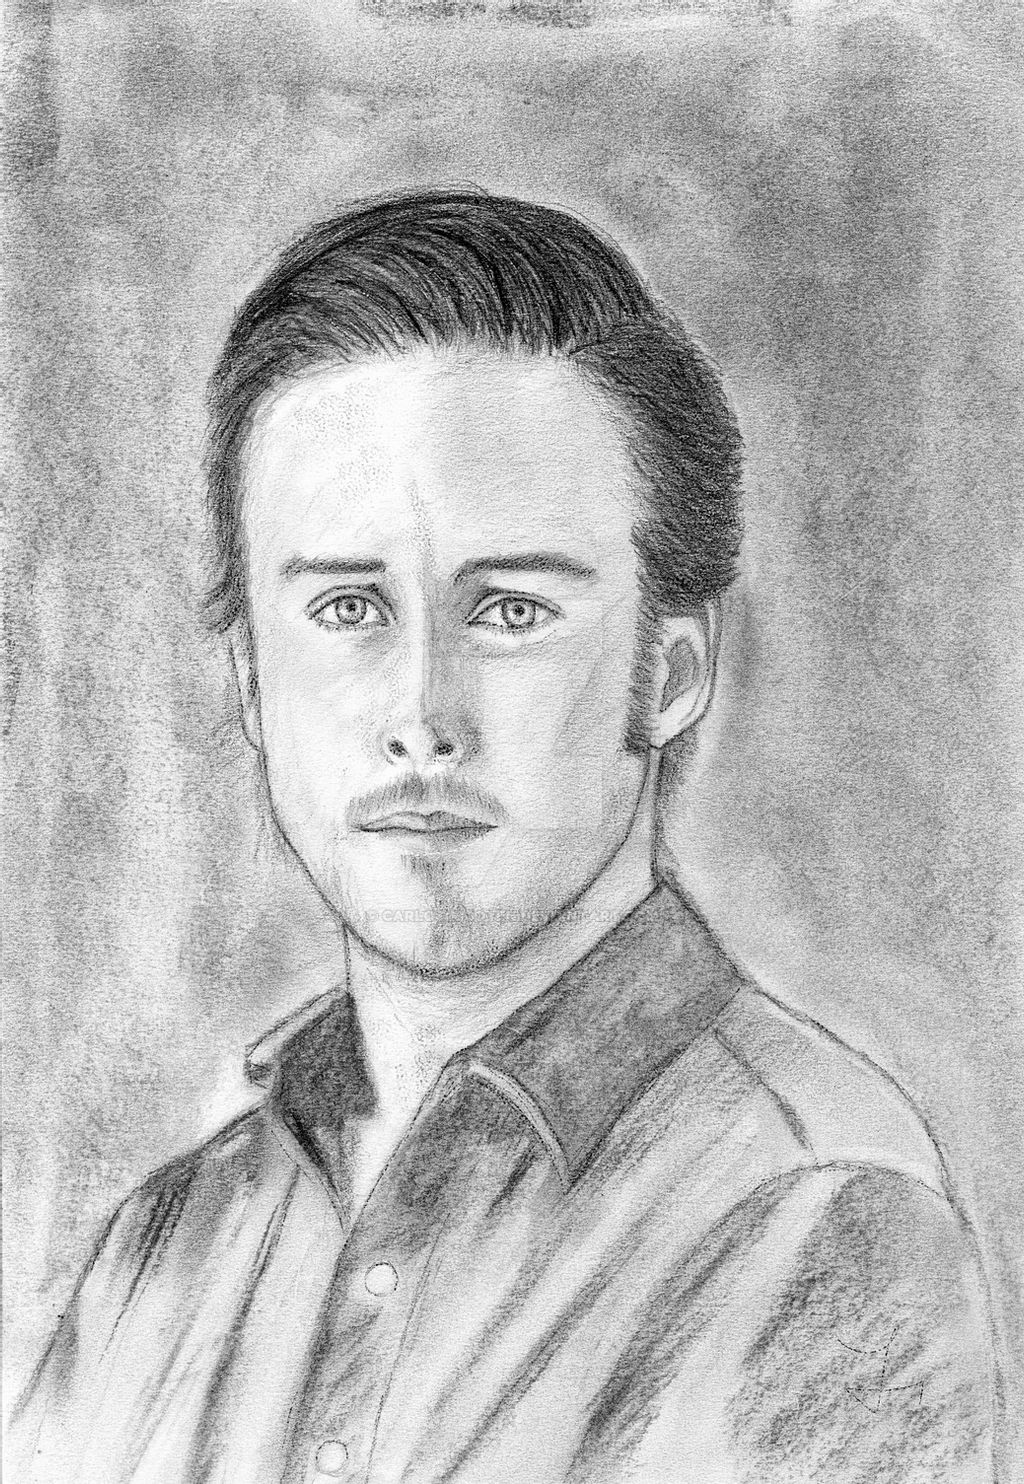 Ryan Gosling Drawing Images